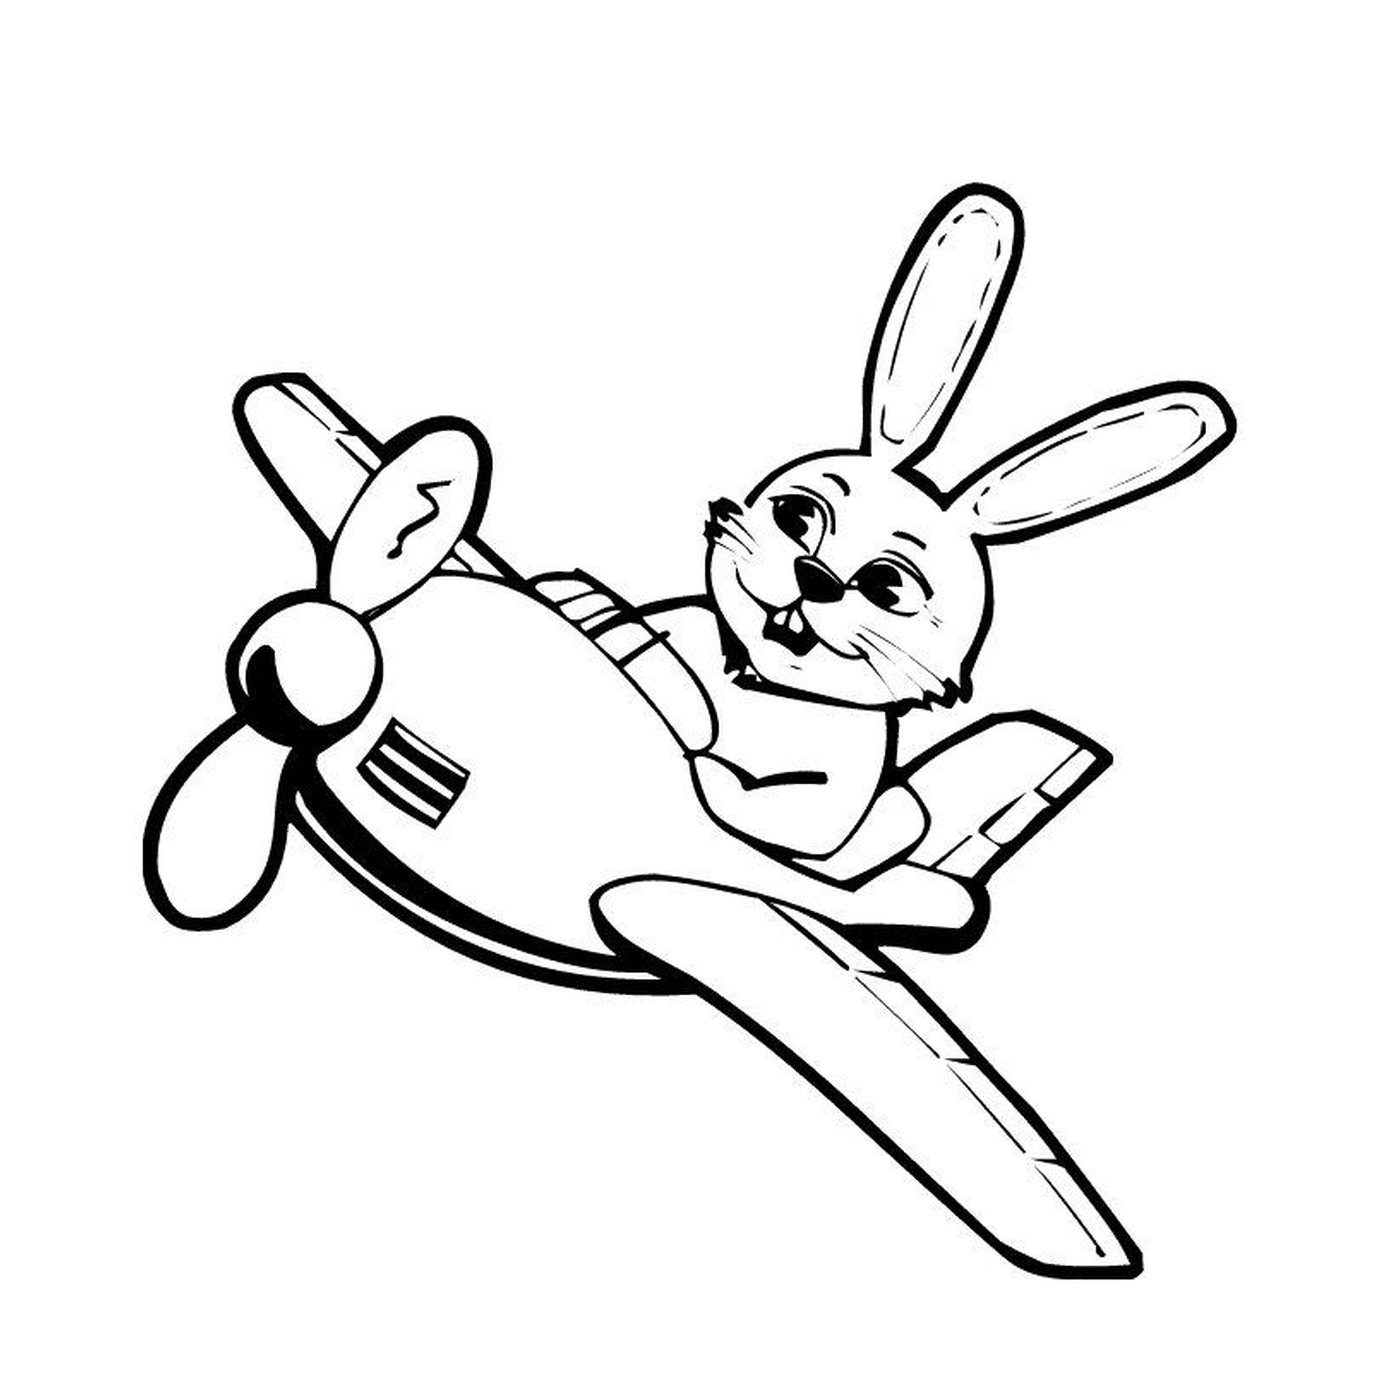   Un avion avec un lapin dessus 